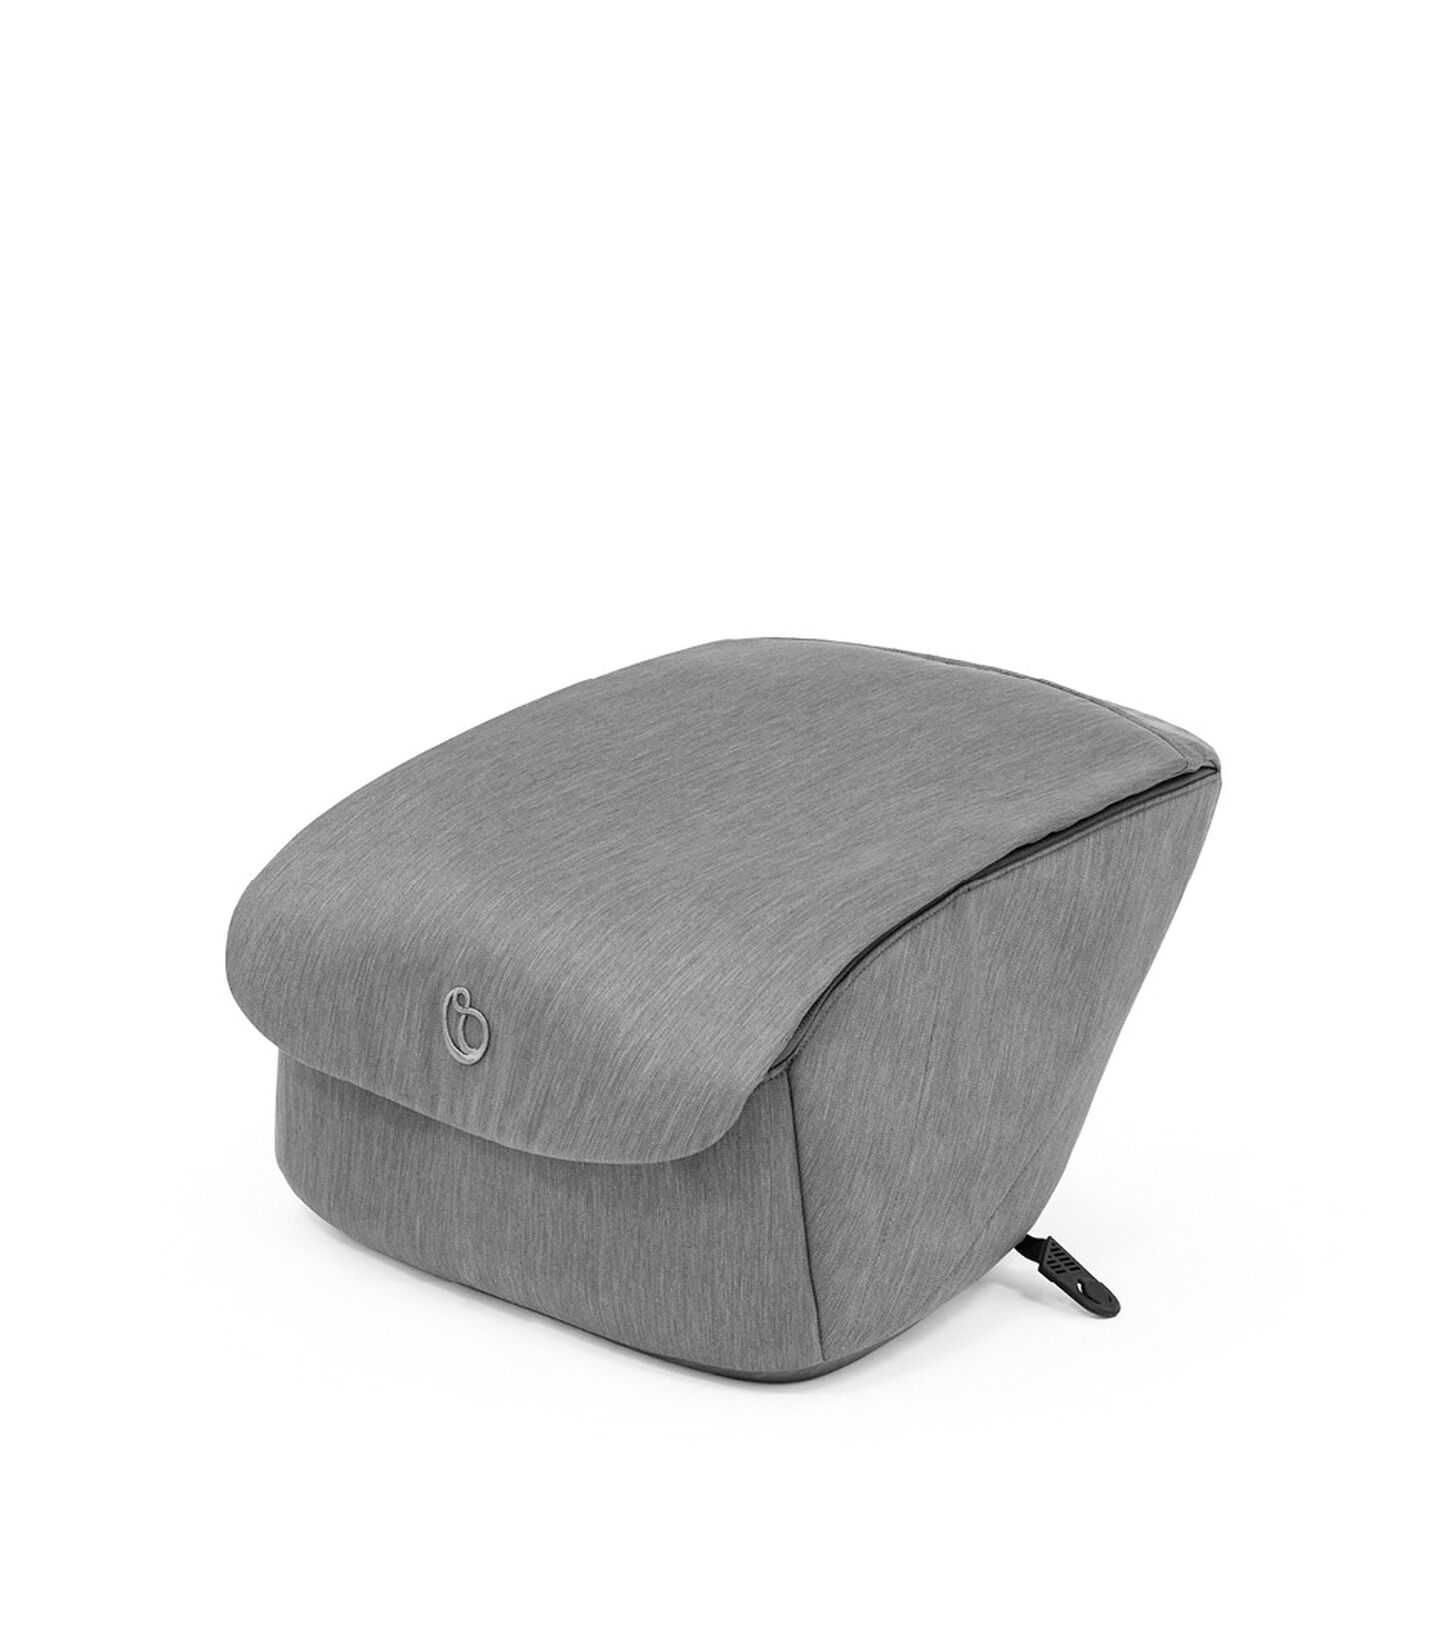 Stokke® Xplory® X Shopping Bag Modern Grey, Modern Grey, mainview view 1